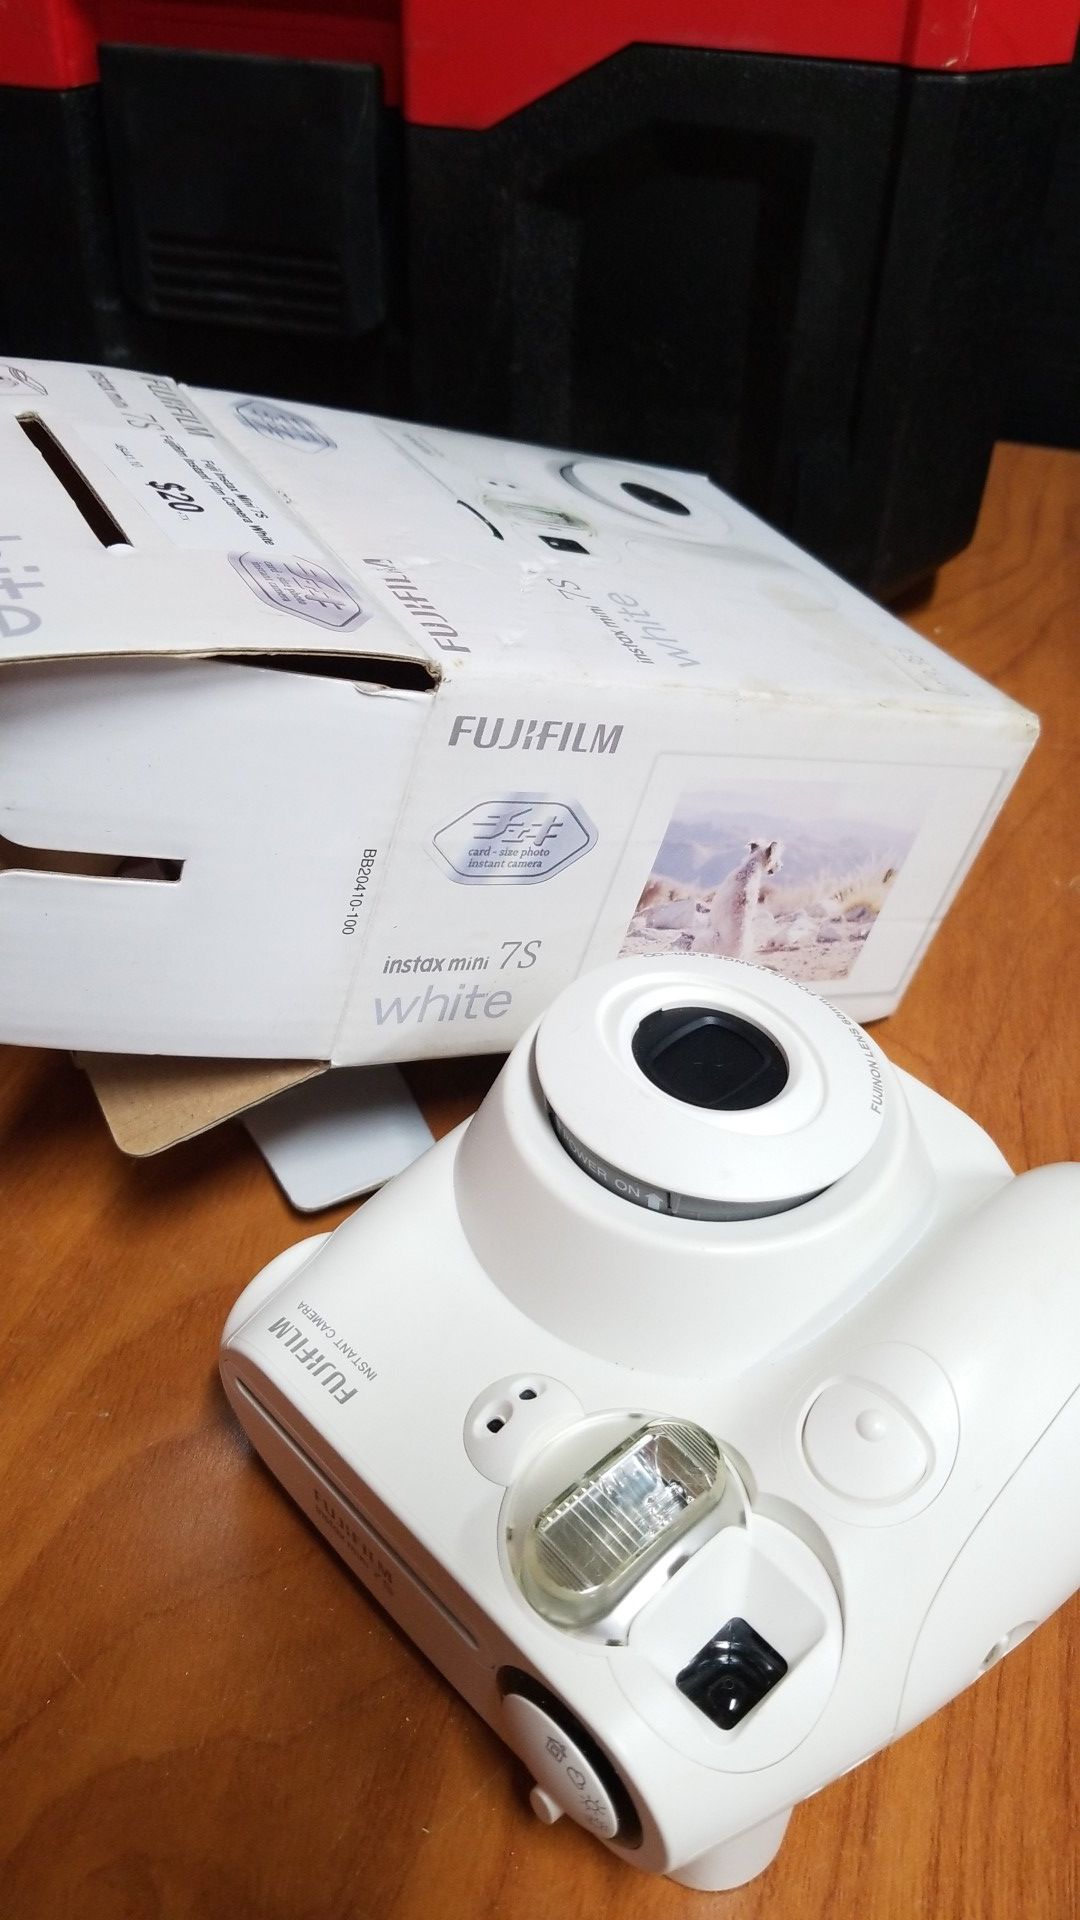 FujiFilm Instax Mini 7S- Fuji Instant Film Camera